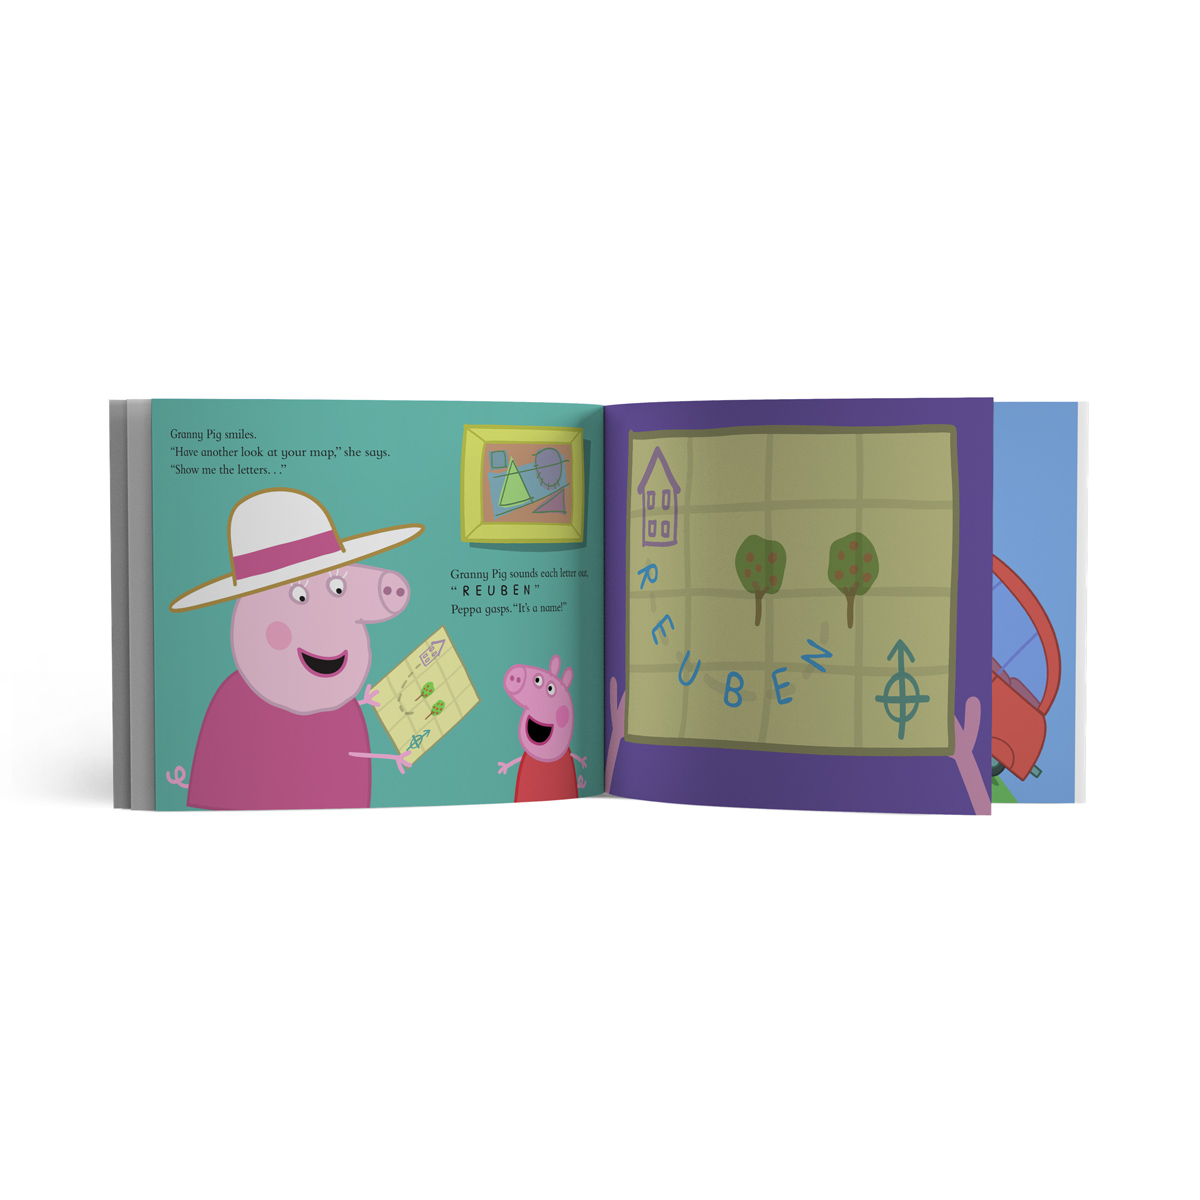 Personalised Adventure Book - Peppa Pig